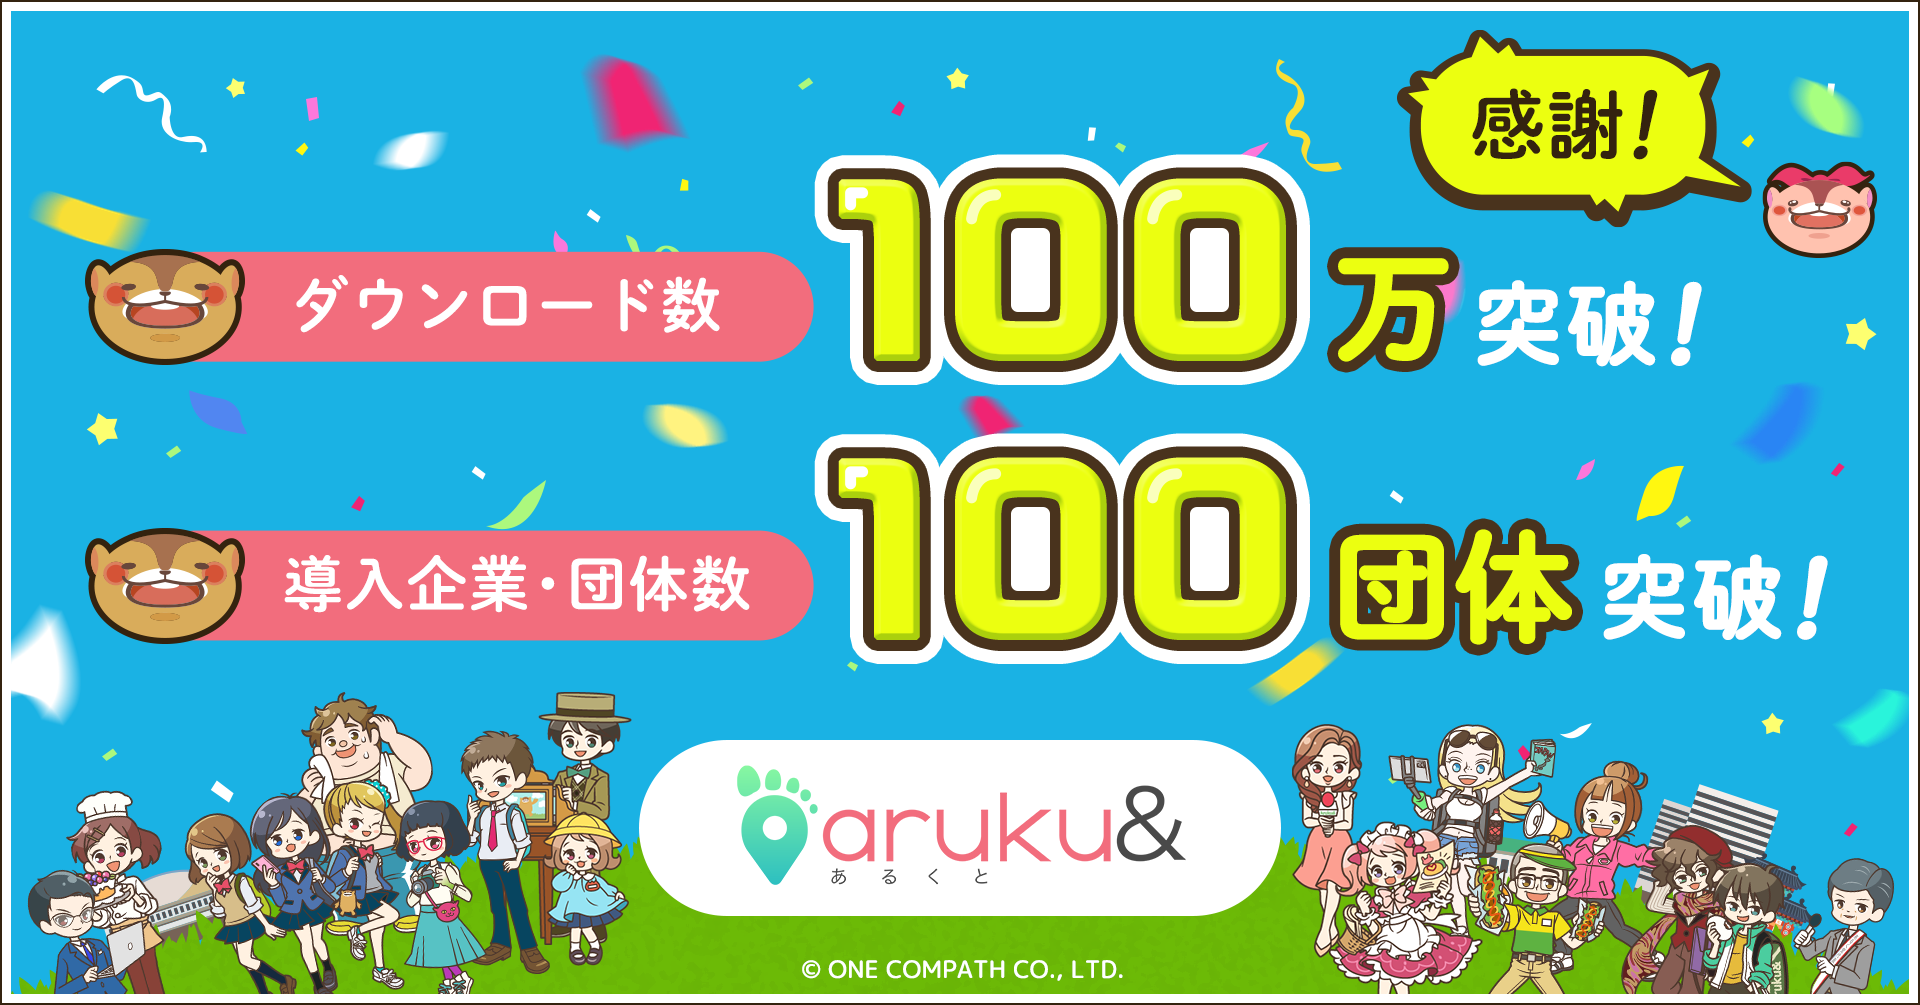 ウォーキングアプリ「aruku&」、100万DL・法人利用100団体を突破